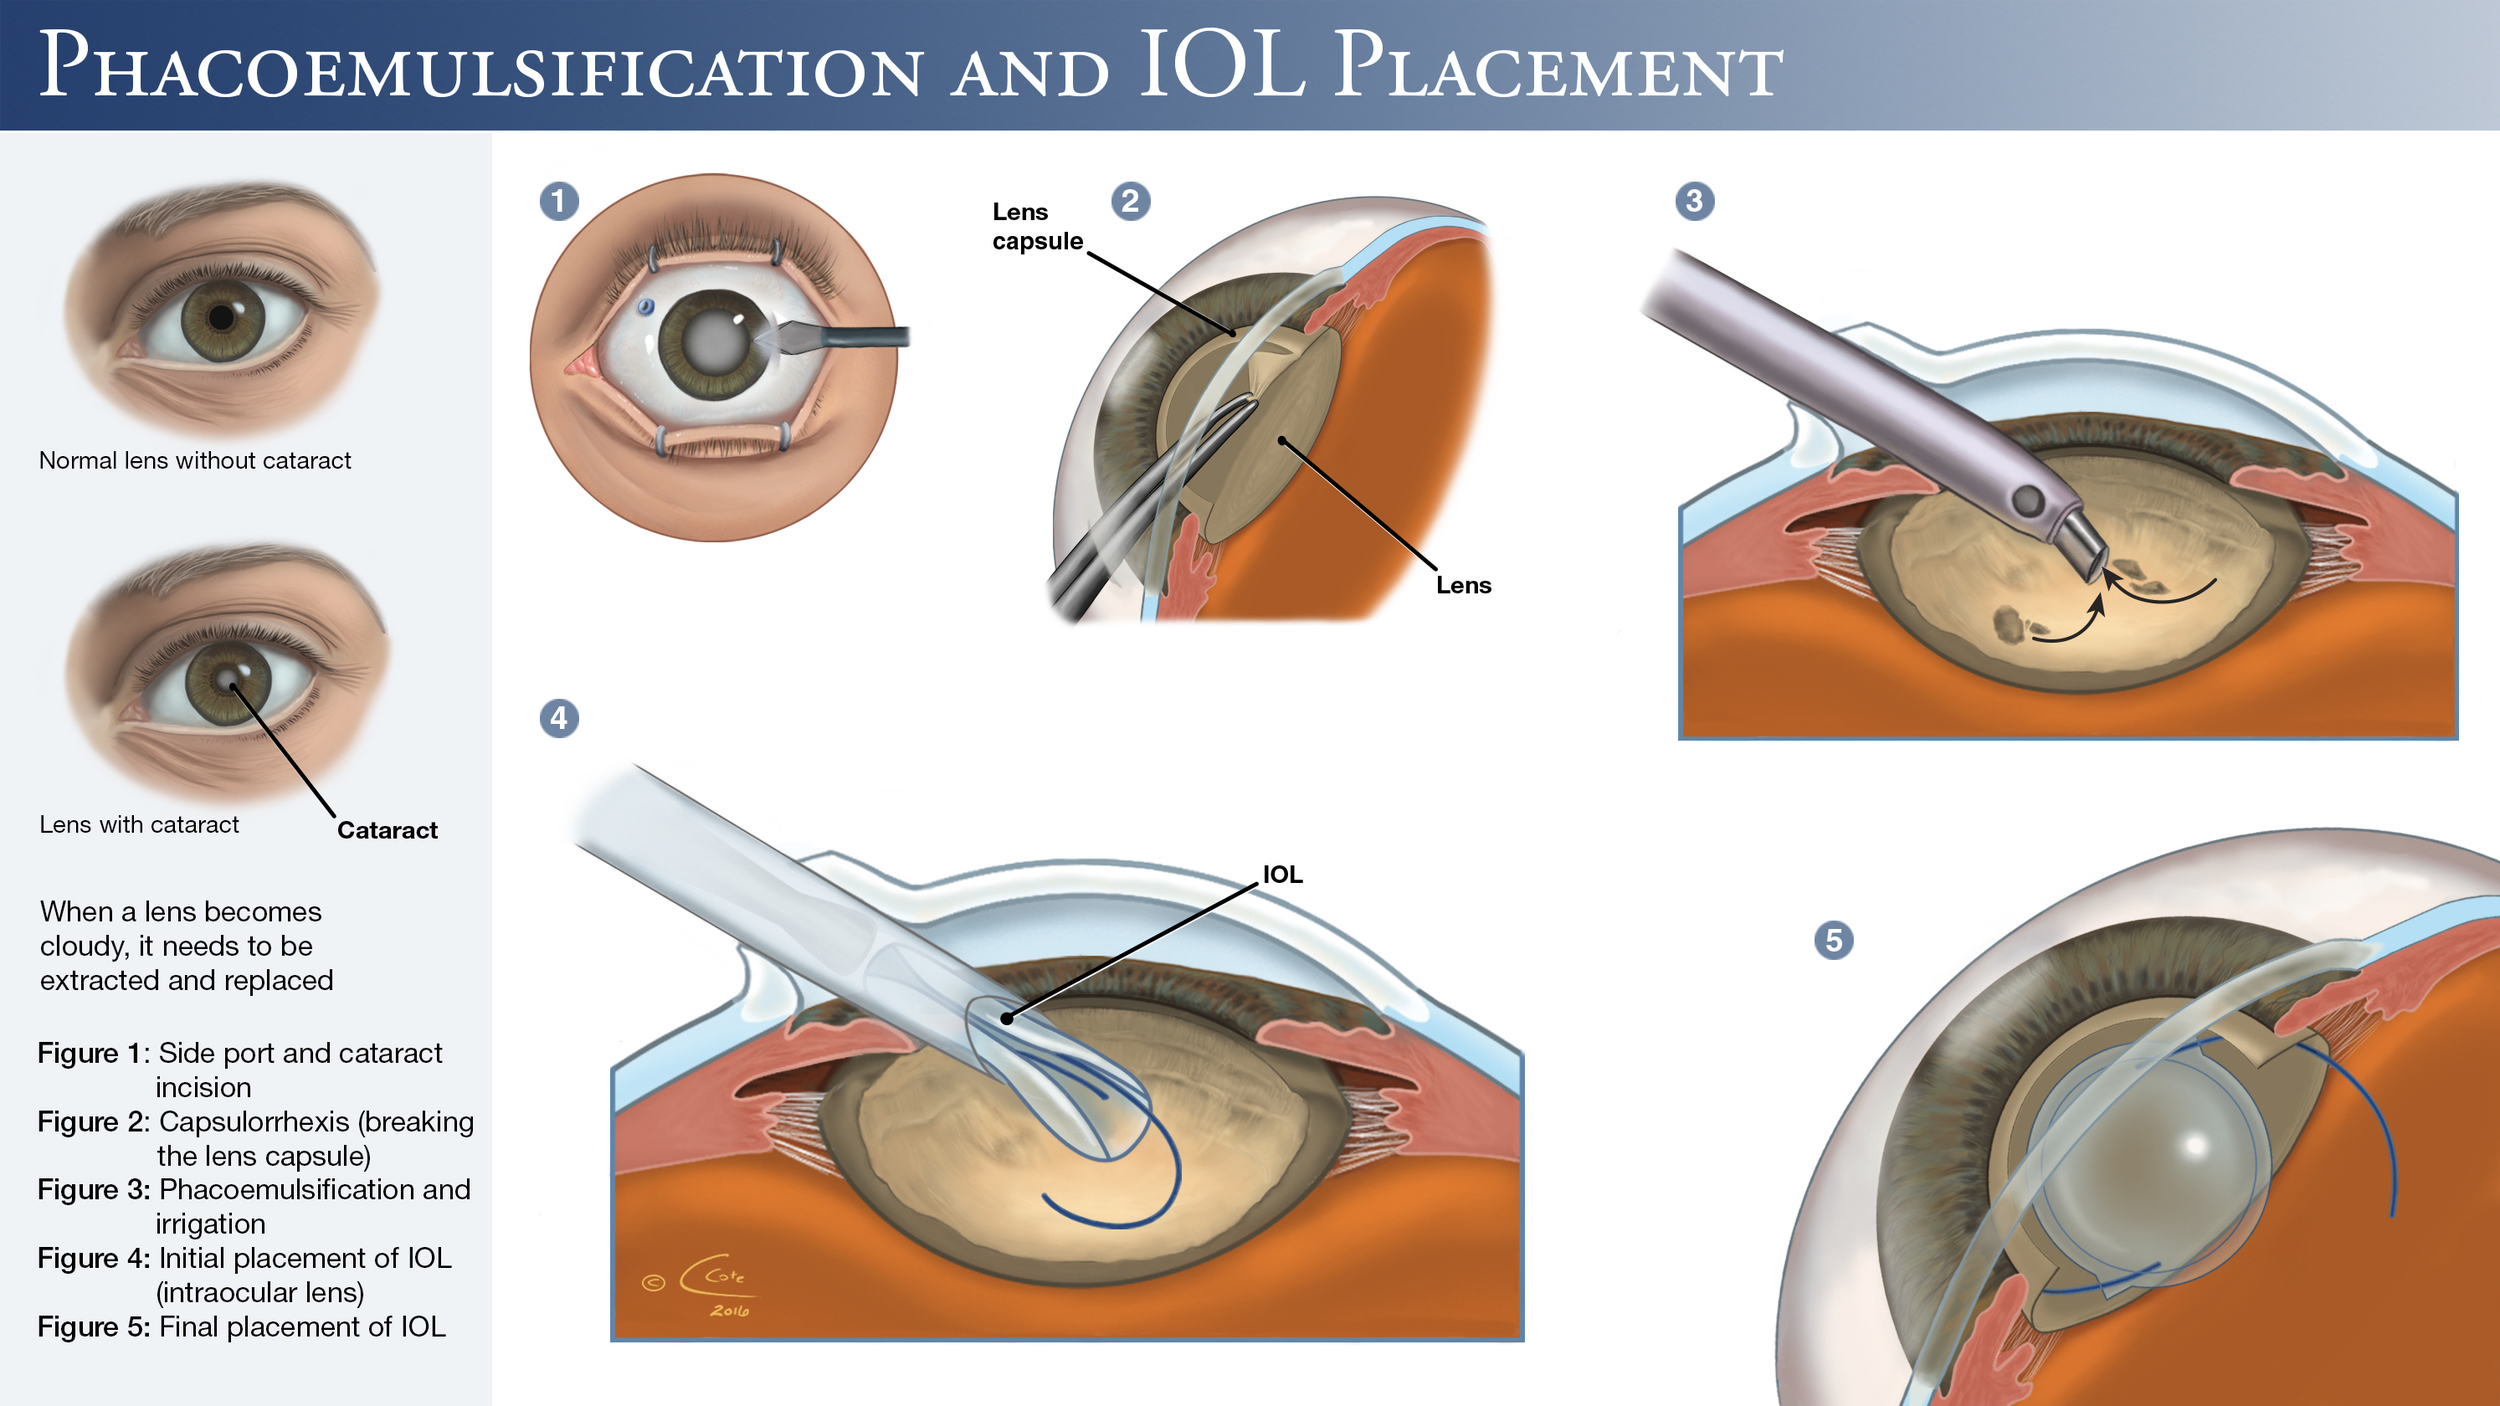 Что нельзя после операции катаракты глаза. Факоэмульсификация катаракты с имплантацией интраокулярной линзы. Операция ультразвуковая факоэмульсификация катаракты. Катаракта операция с имплантацией ИОЛ. Факоэмульсификация катаракты этапы операции.